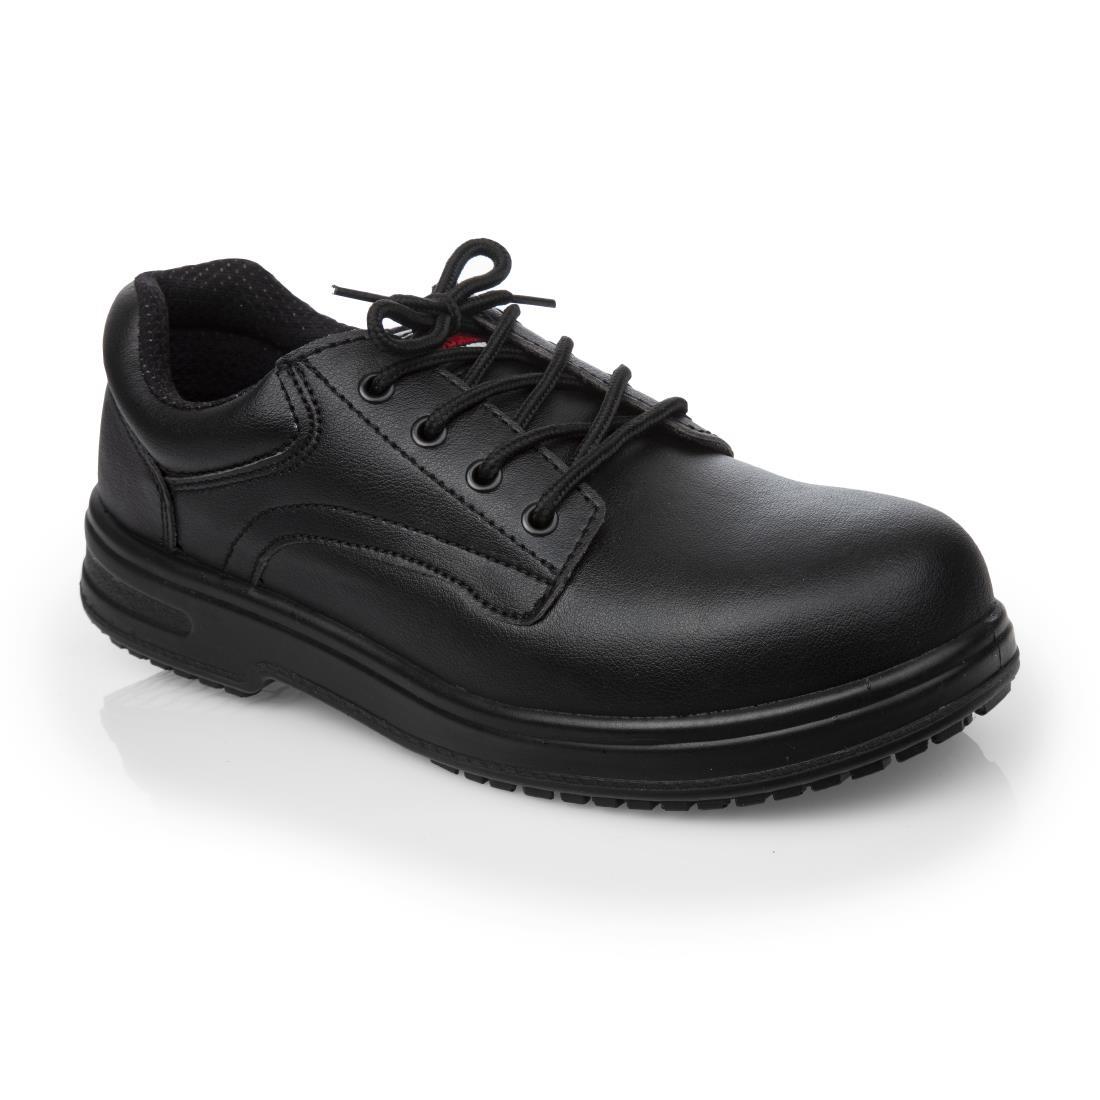 Slipbuster Basic Toe Cap Safety Shoes Black 46 - BB497-46  - 1